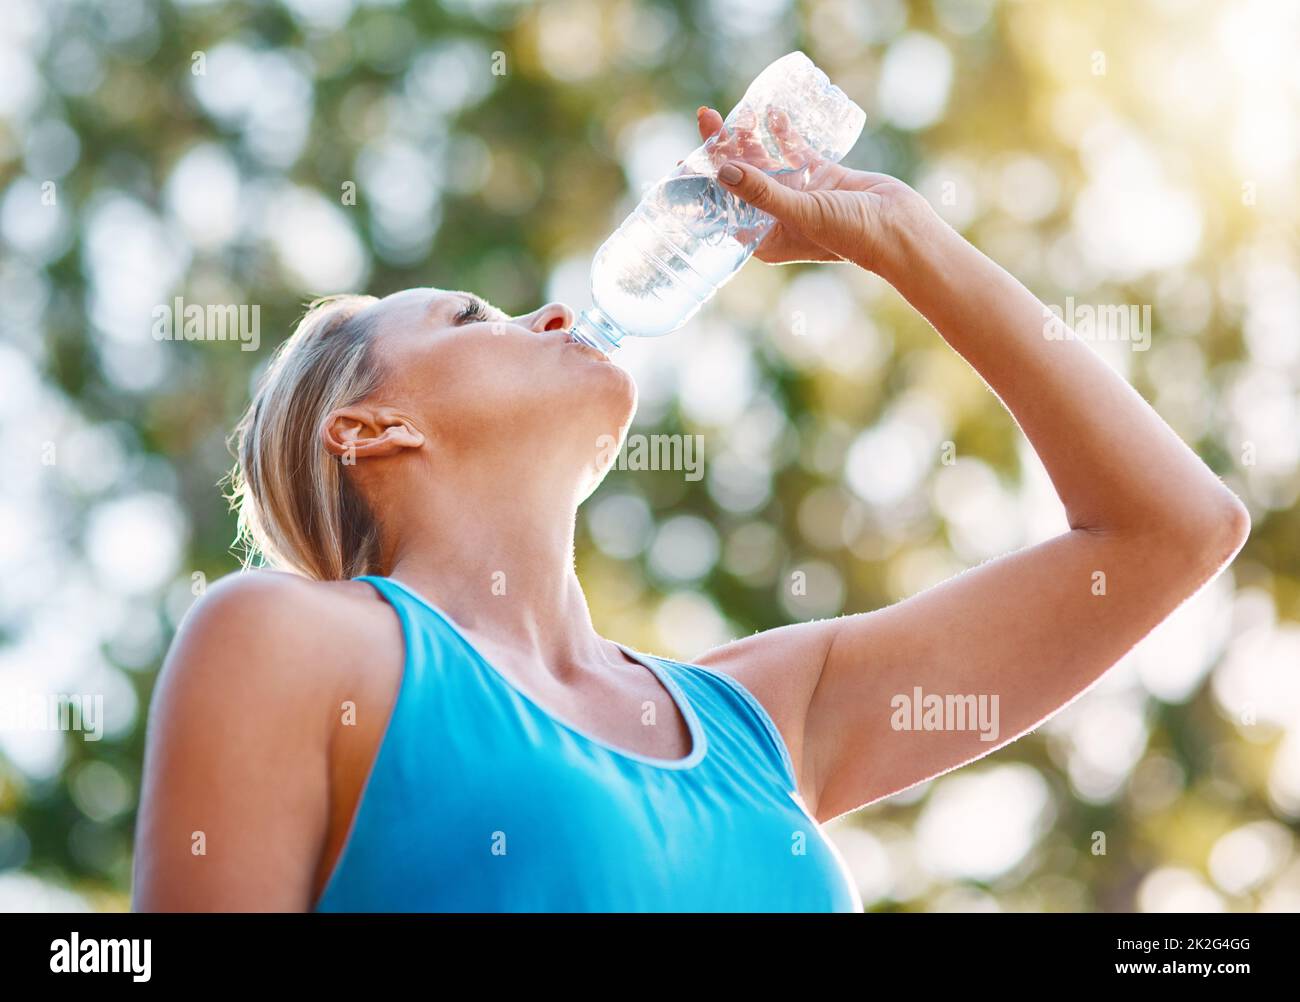 Rimani sempre idratato durante i tuoi allenamenti. Colpo ad angolo basso di una donna matura che beve acqua da una bottiglia all'aperto. Foto Stock